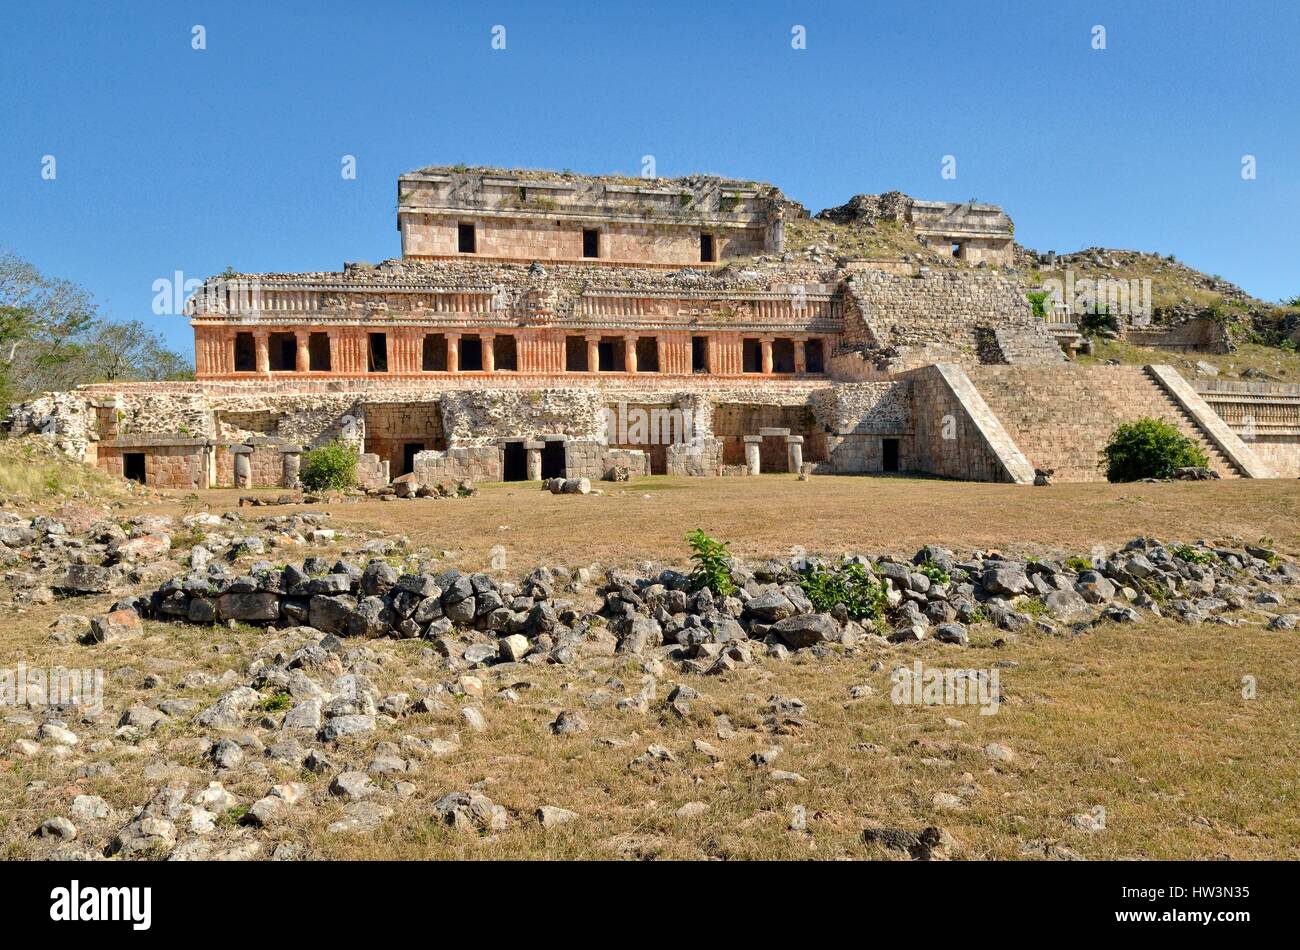 El Palacio, Grand Palace, historic Mayan city Sayil, Yucatan State, Mexico Stock Photo